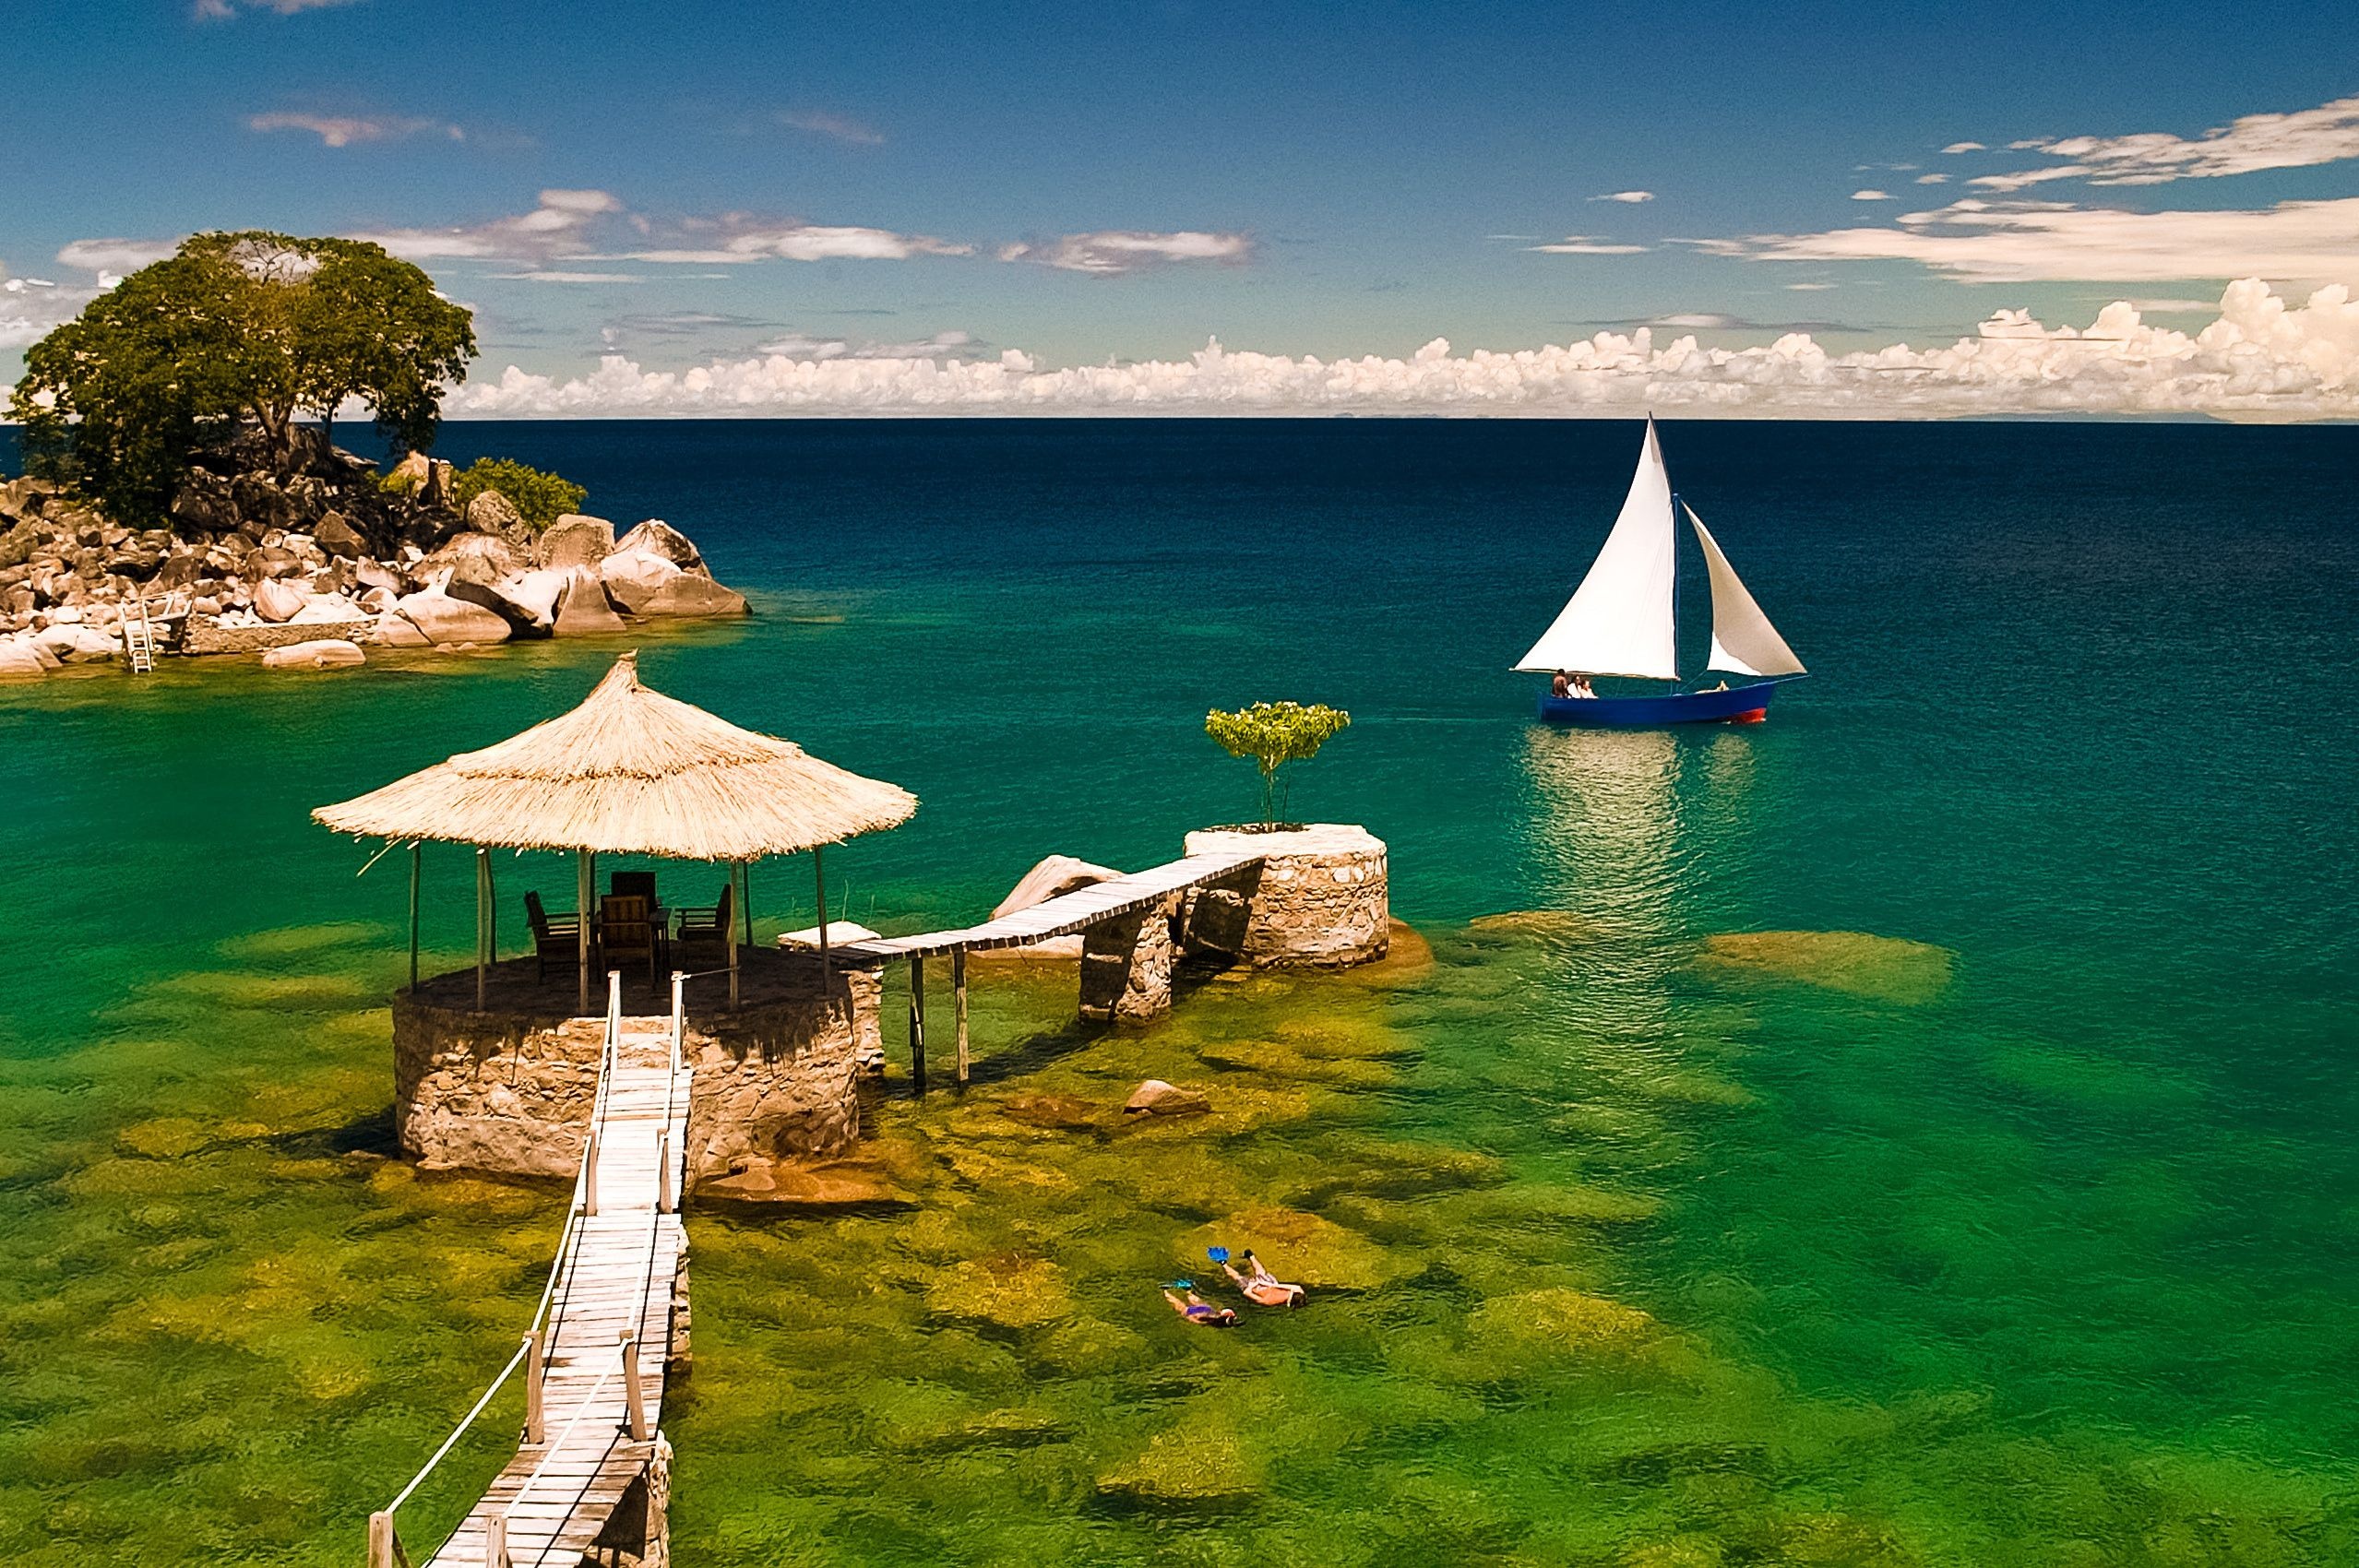 Malawi travels, Mozambique border, Vibrant culture, Natural beauty, 2560x1700 HD Desktop